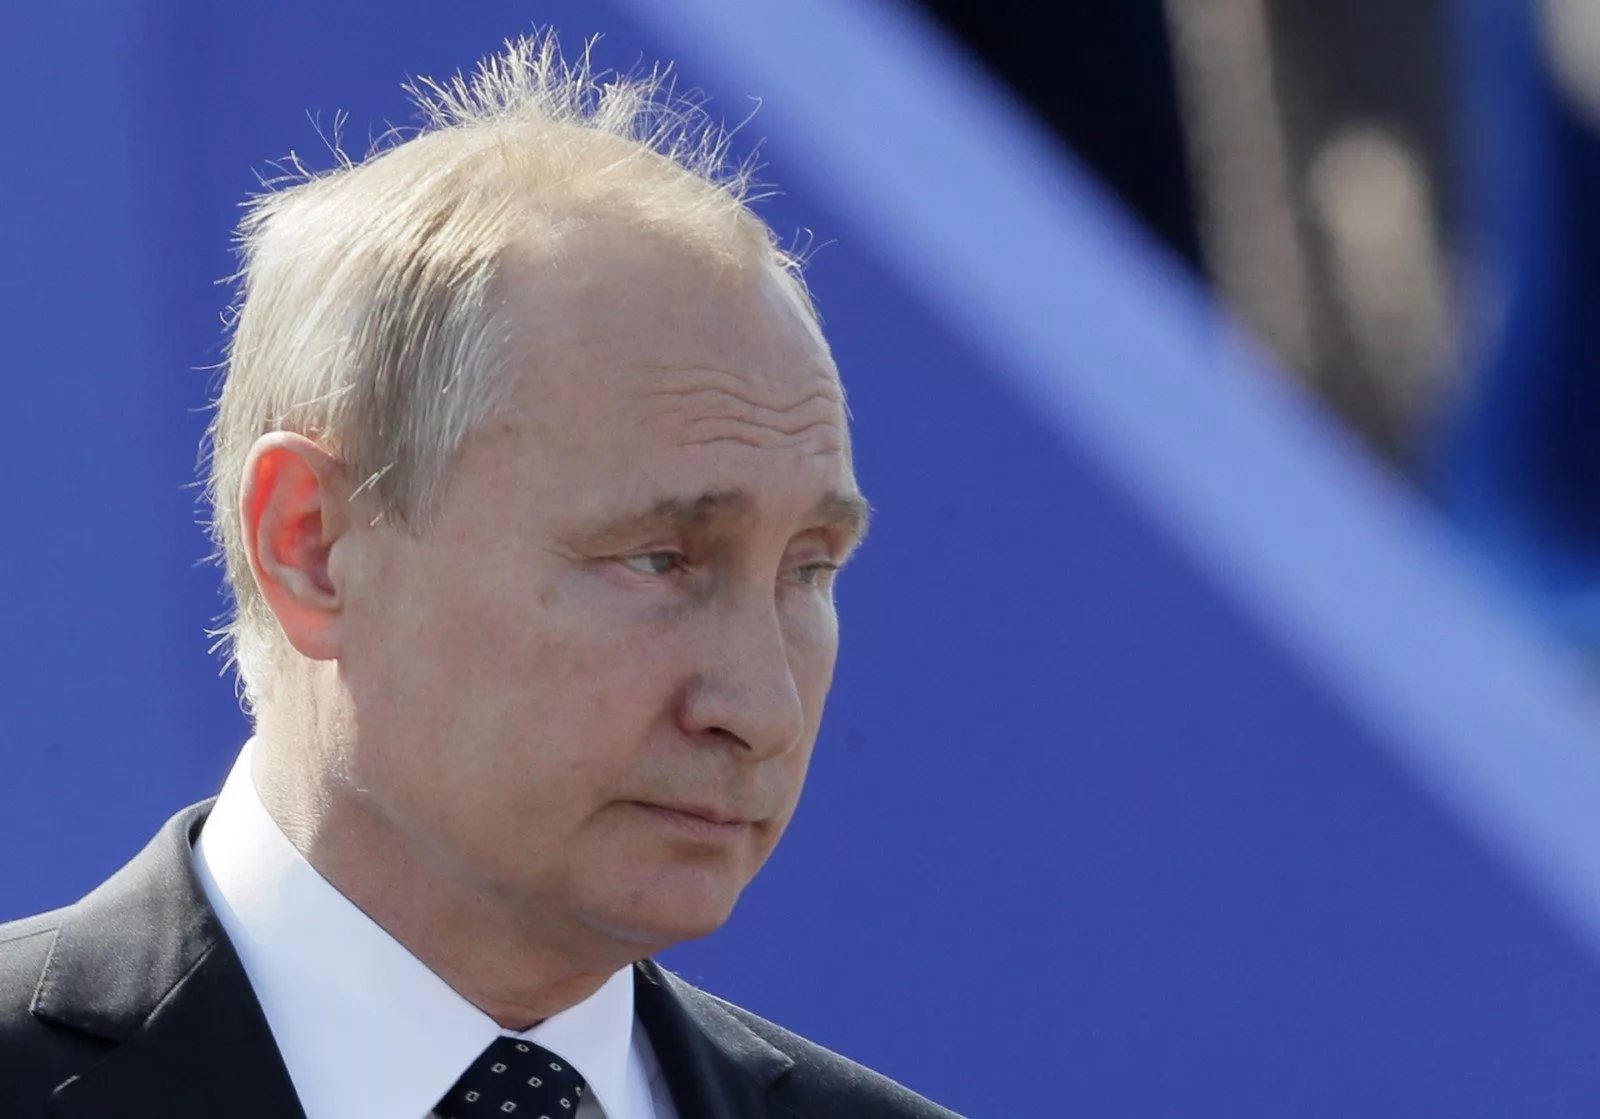 "Здоров'я Путіна – питання нацбезпеки": Пєсков спробував пояснити, чому глава Кремля не поспішає спілкуватися з пресою